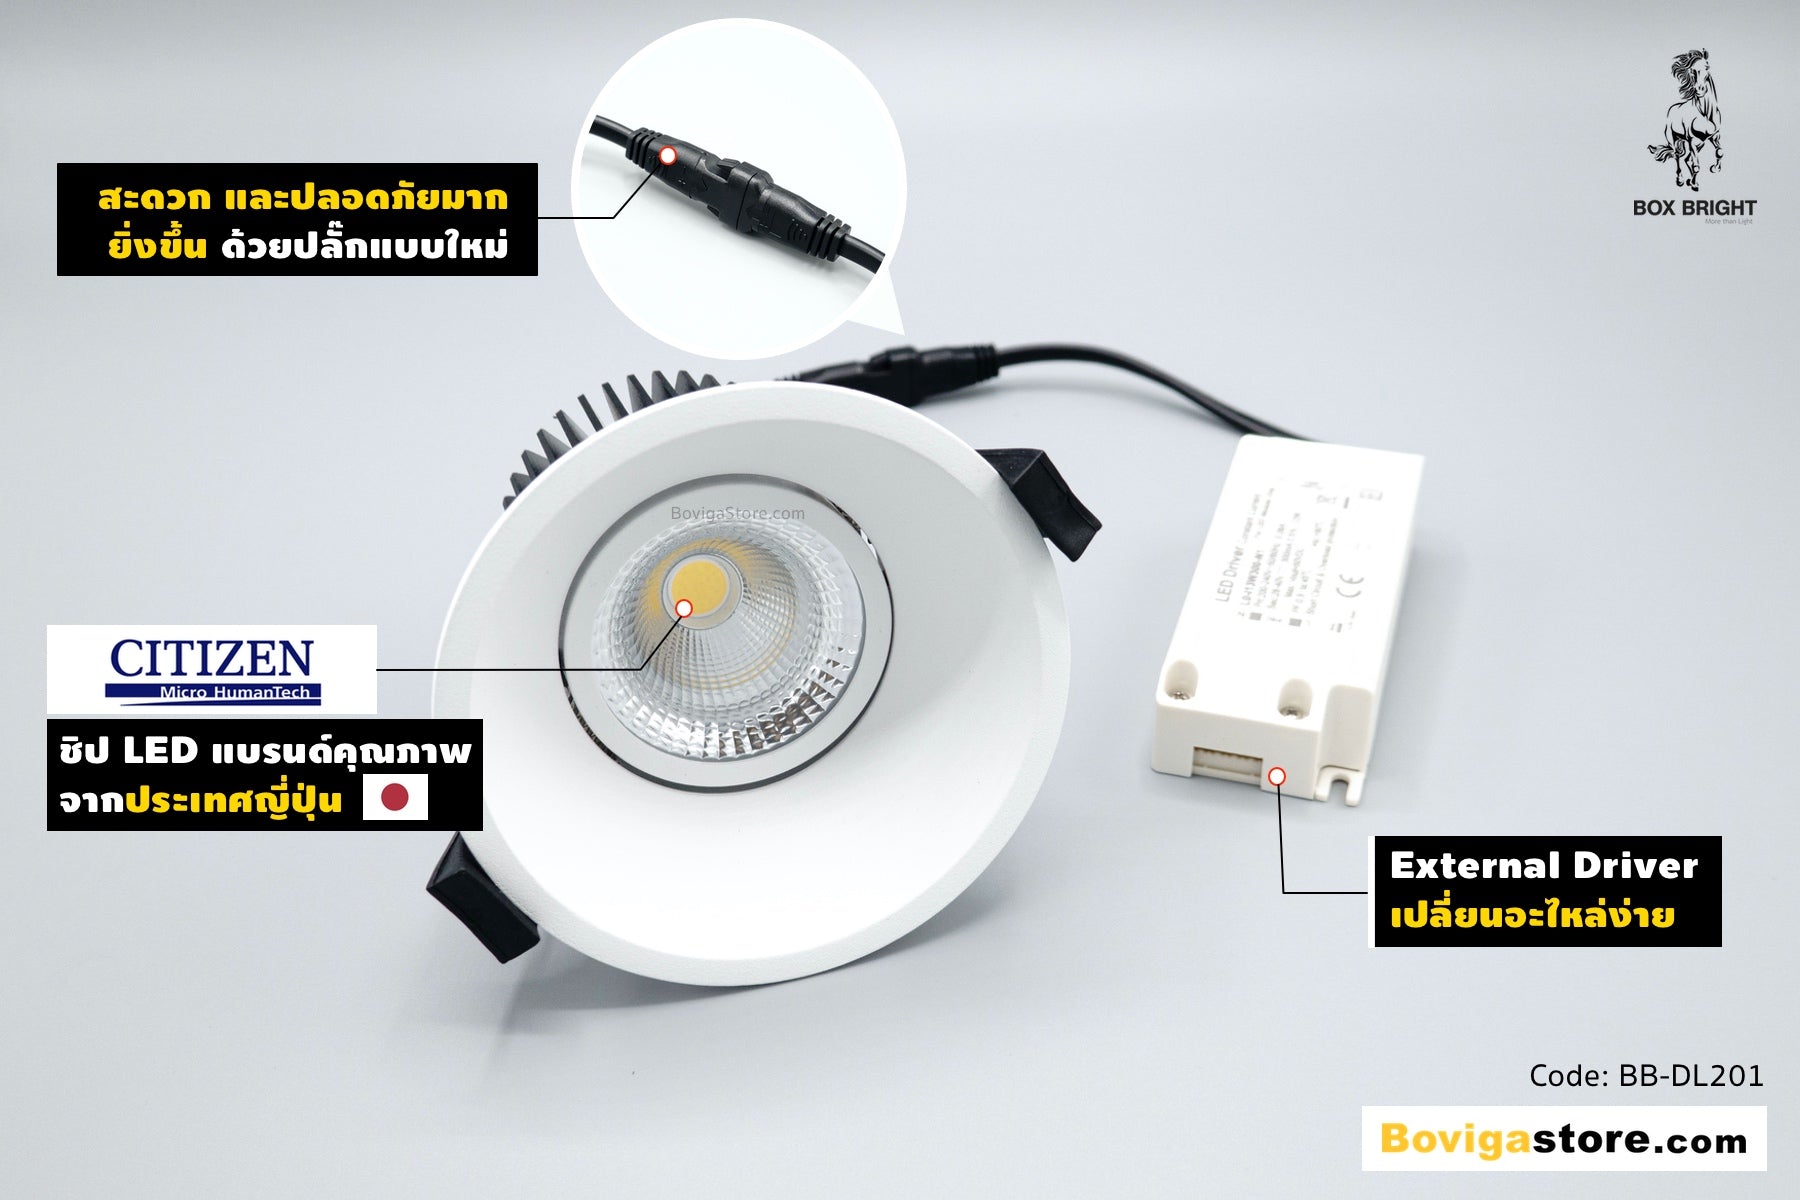 โคมไฟ ดาวไลท์ LED รุ่น DL201 แบรนด์ BOX BRIGHT เลือกใช้ชิป LED คุณภาพสูง แบรนด์ CITIZEN จากประเทศญี่ปุ่น